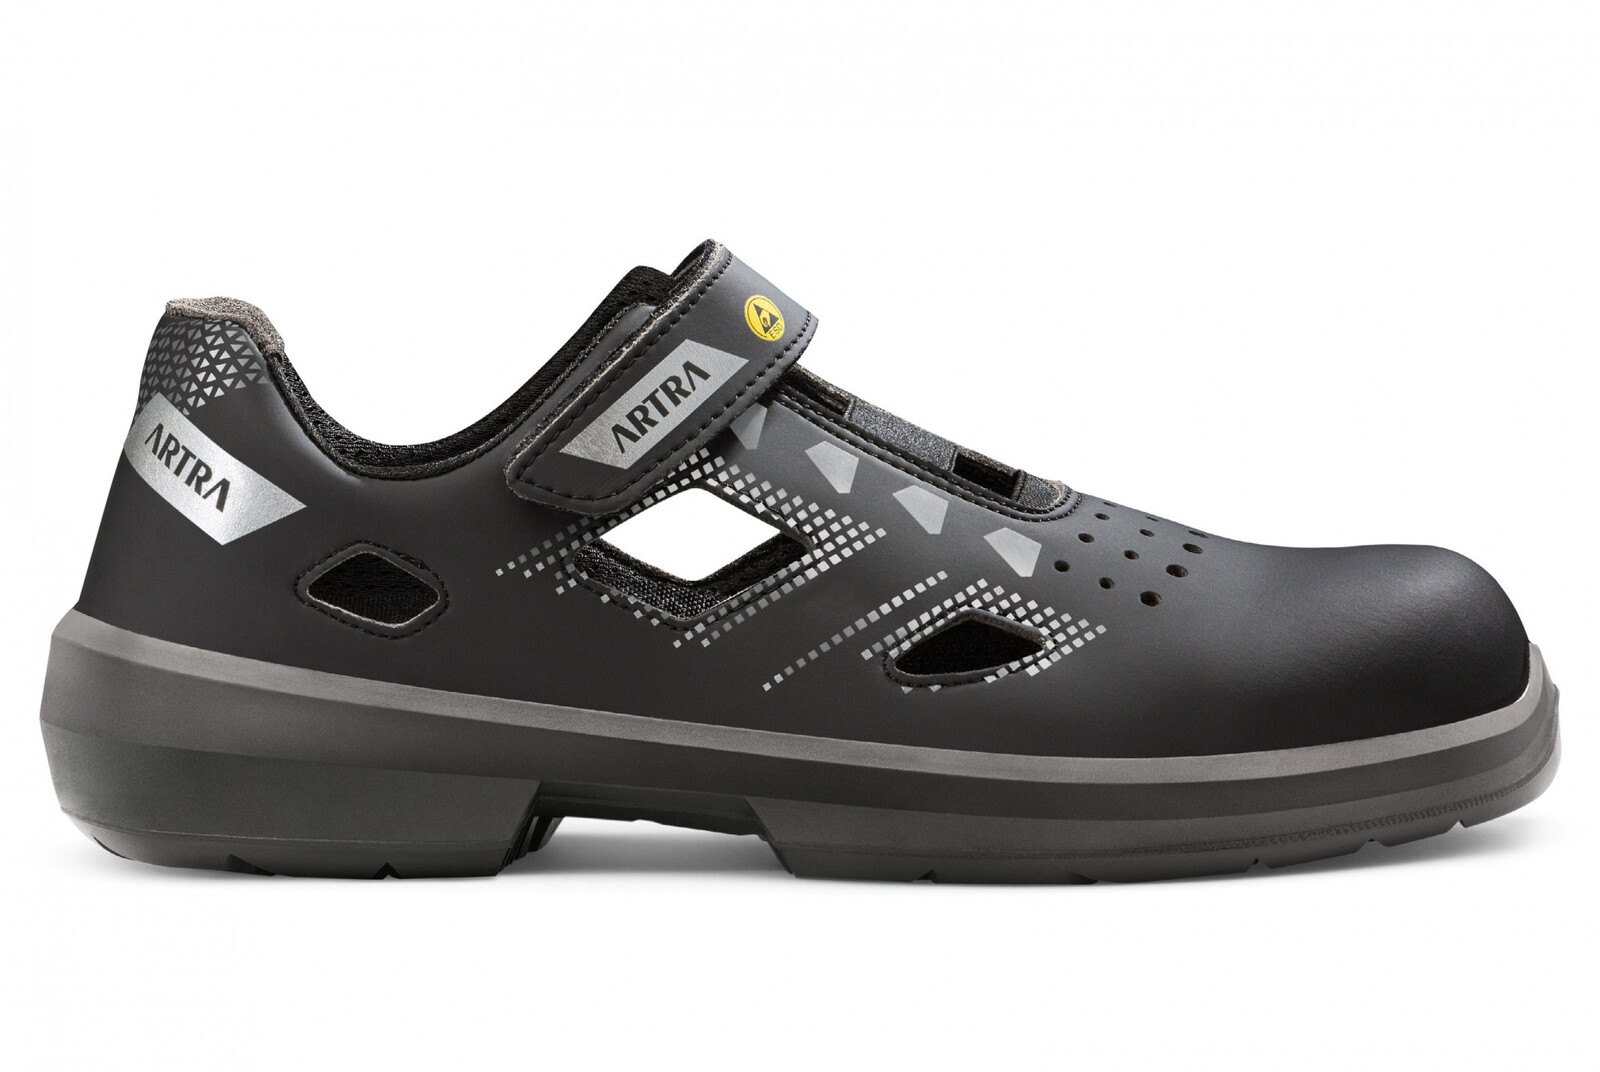 Bezpečnostné sandále Artra Arzo 805 676560 S1 SRC ESD MF - veľkosť: 42, farba: čierna/sivá